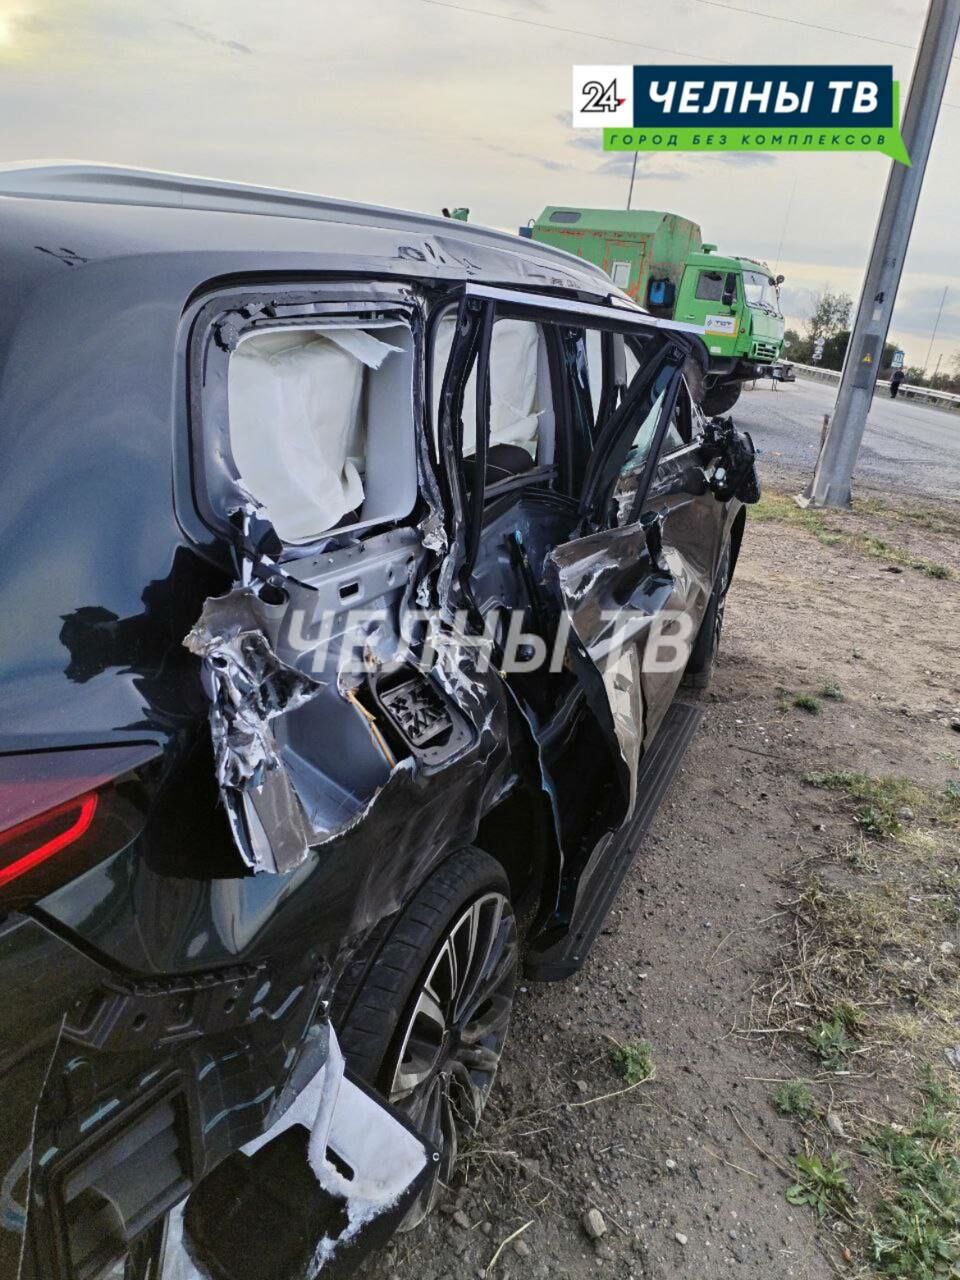 На трассе в Татарстане произошло серьезное ДТП, есть пострадавший